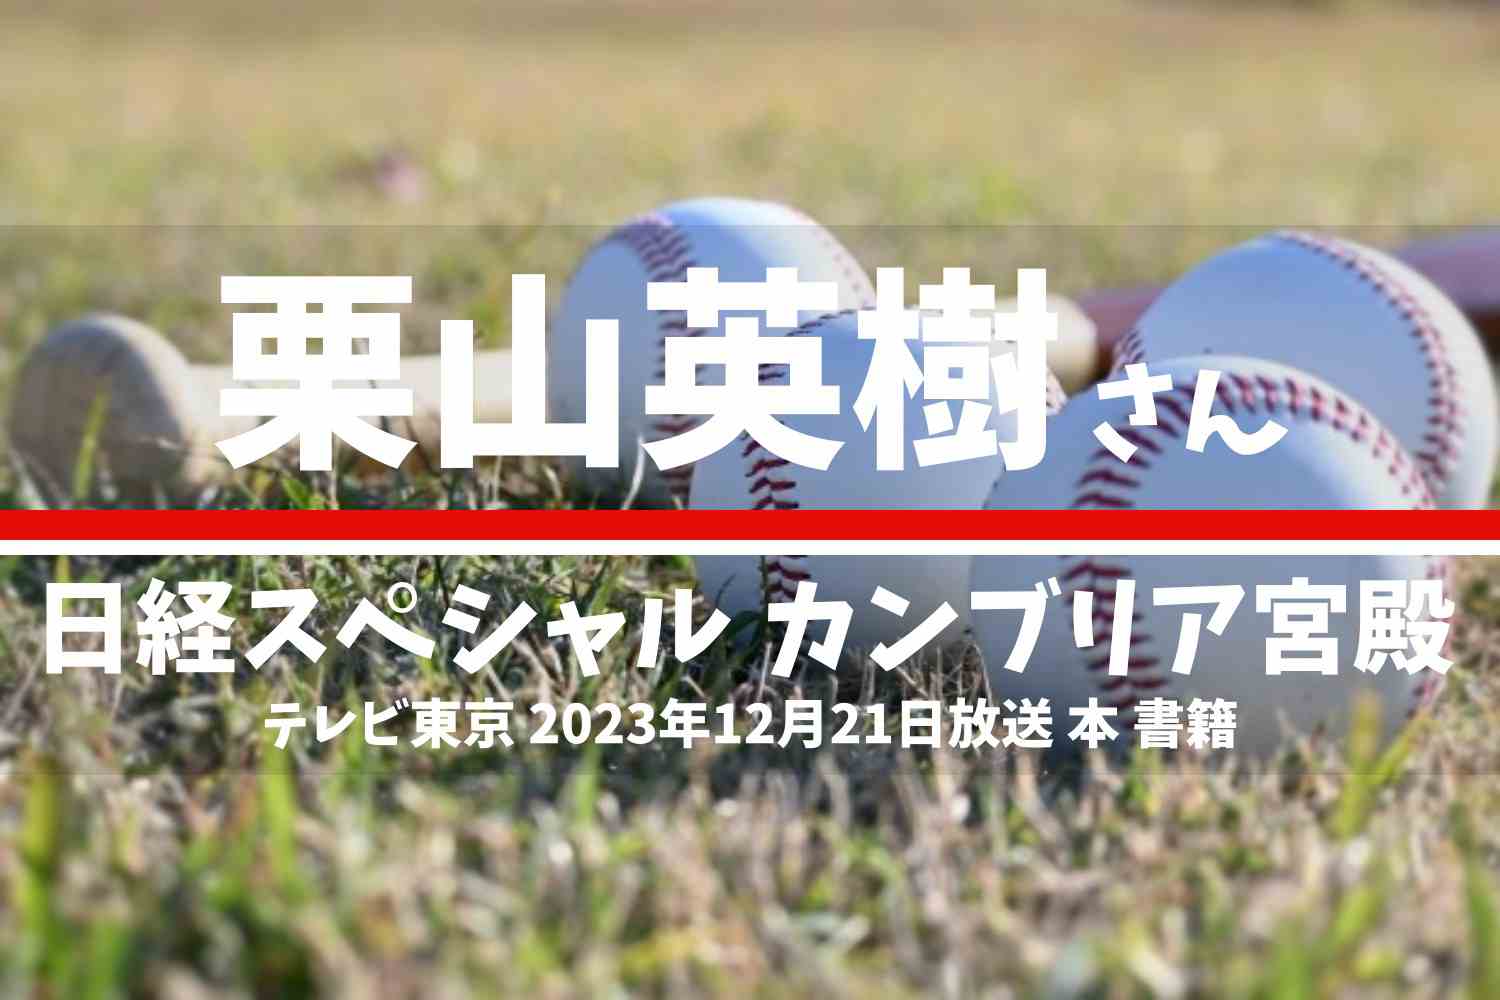 日経スペシャル カンブリア宮殿 栗山英樹さん テレビ番組 2023年12月22日放送